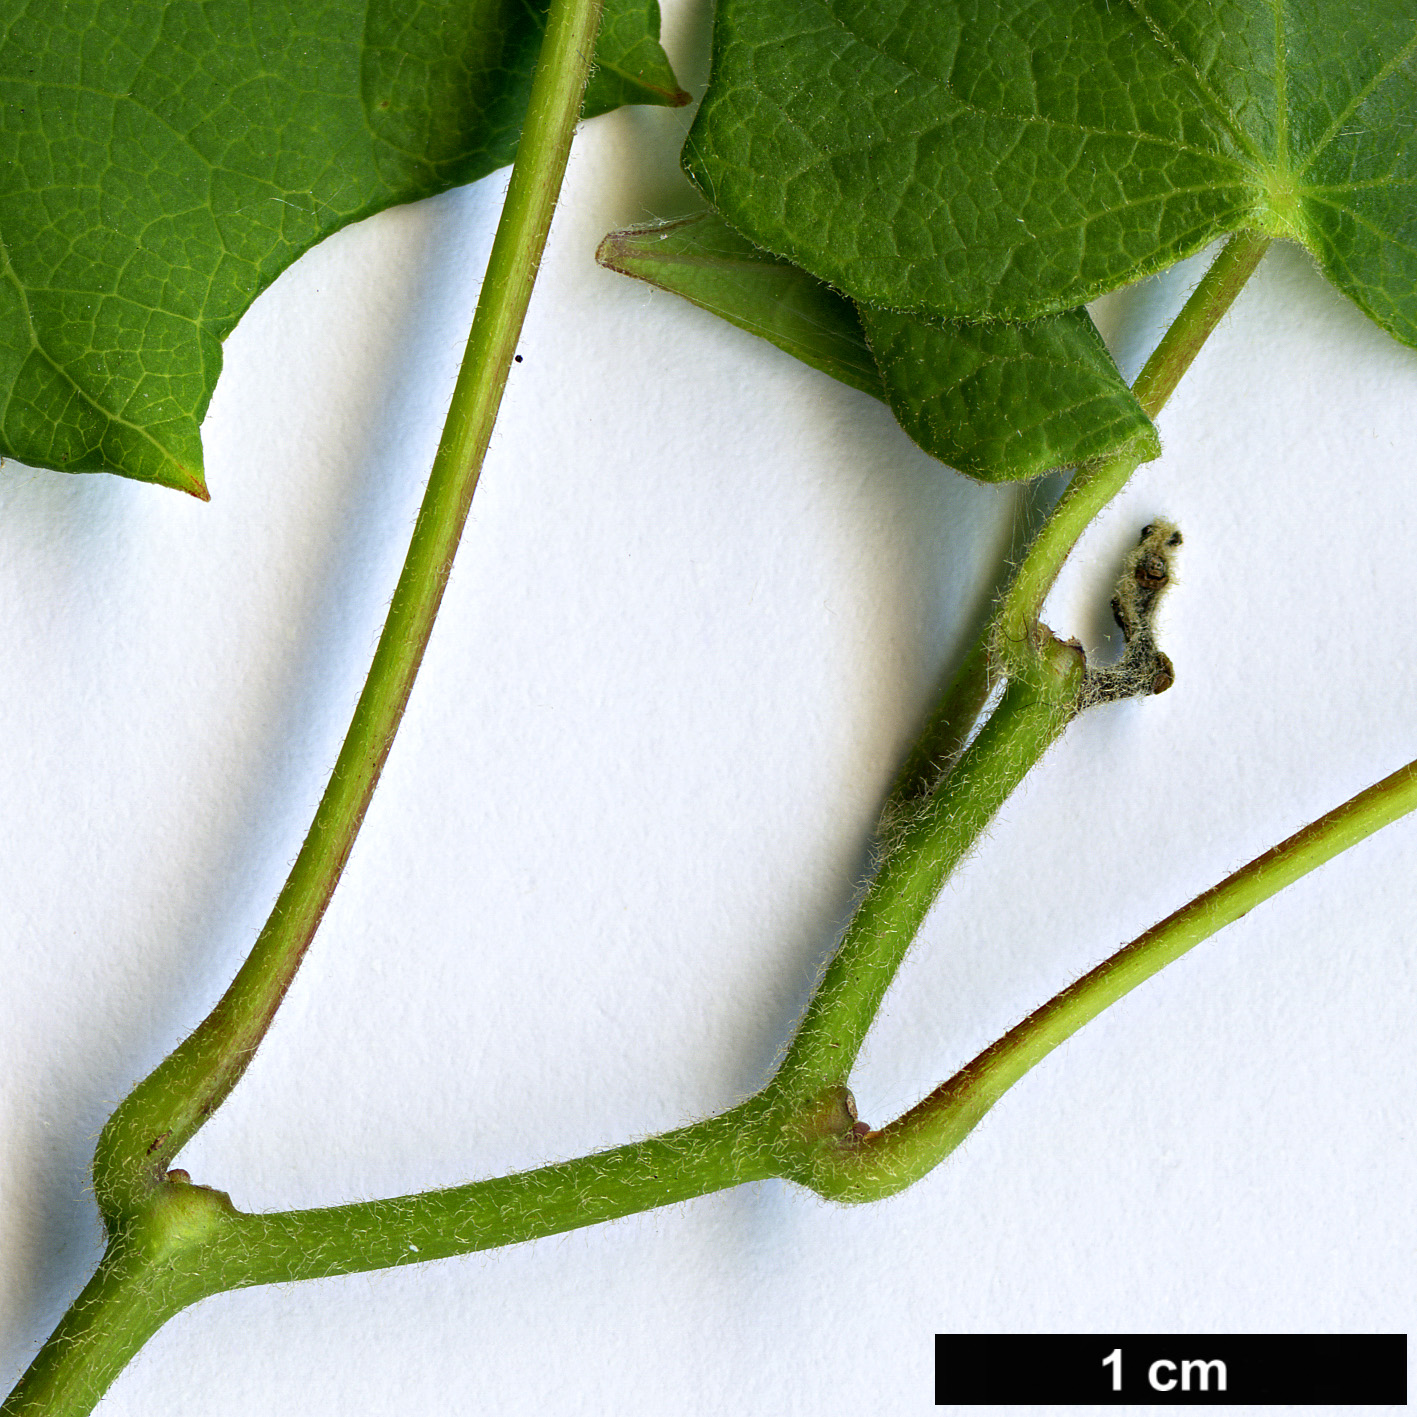 High resolution image: Family: Menispermaceae - Genus: Menispermum - Taxon: dauricum